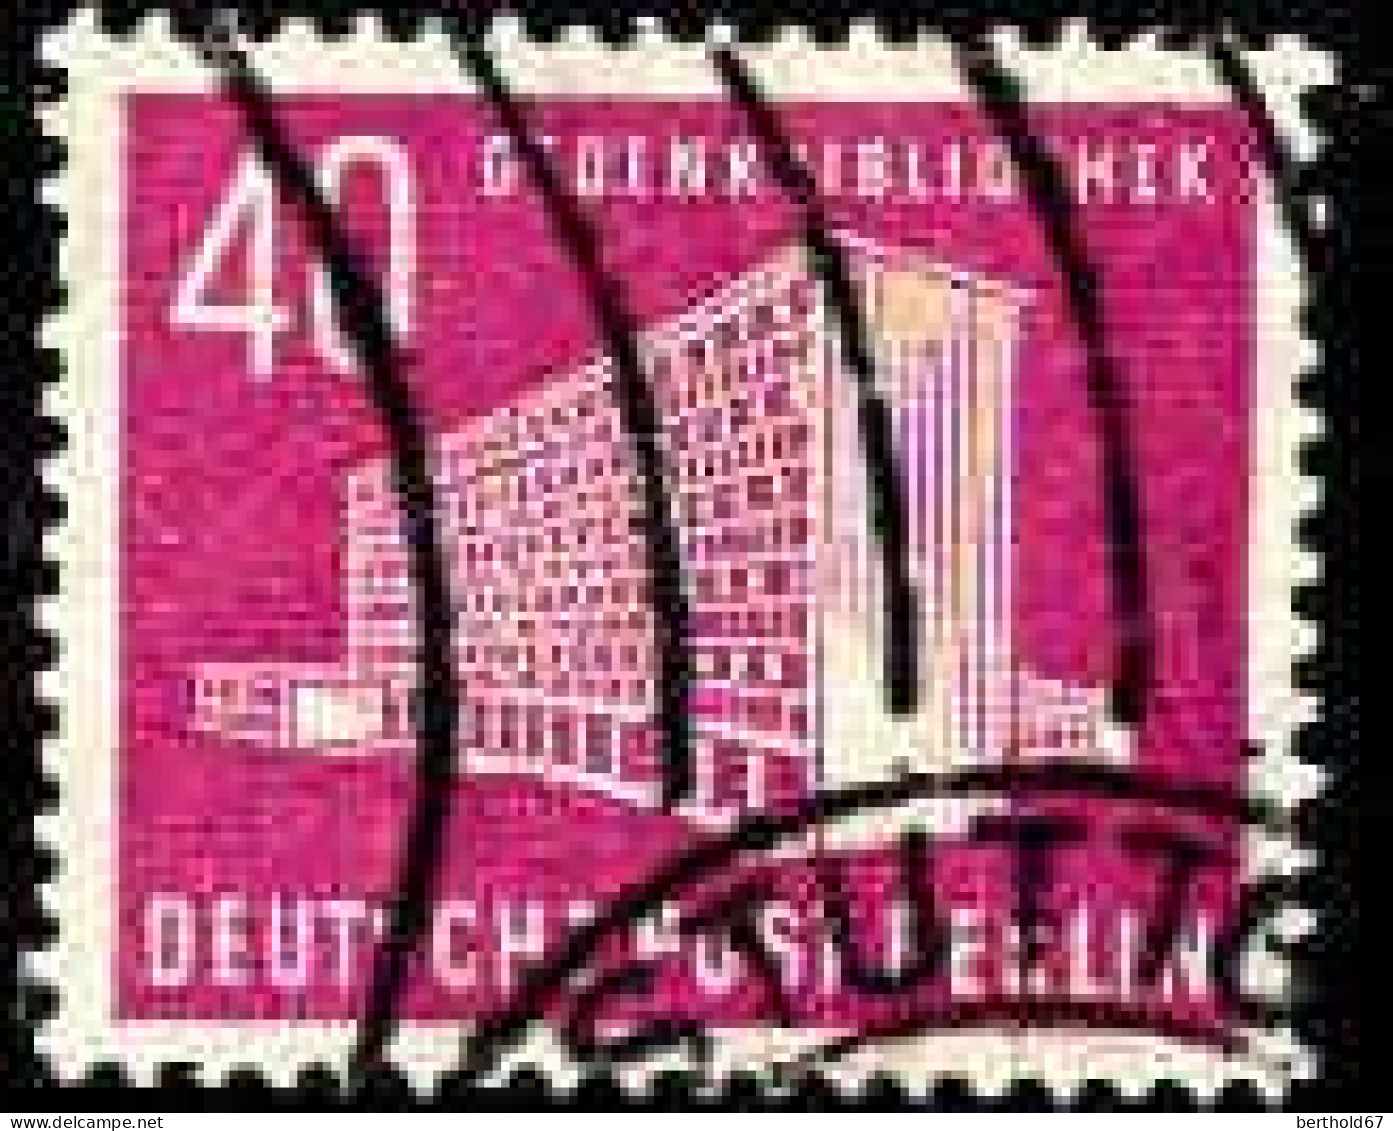 Berlin Poste Obl Yv:101 Mi:122 Gedenkbibliothek (cachet Rond) - Gebraucht